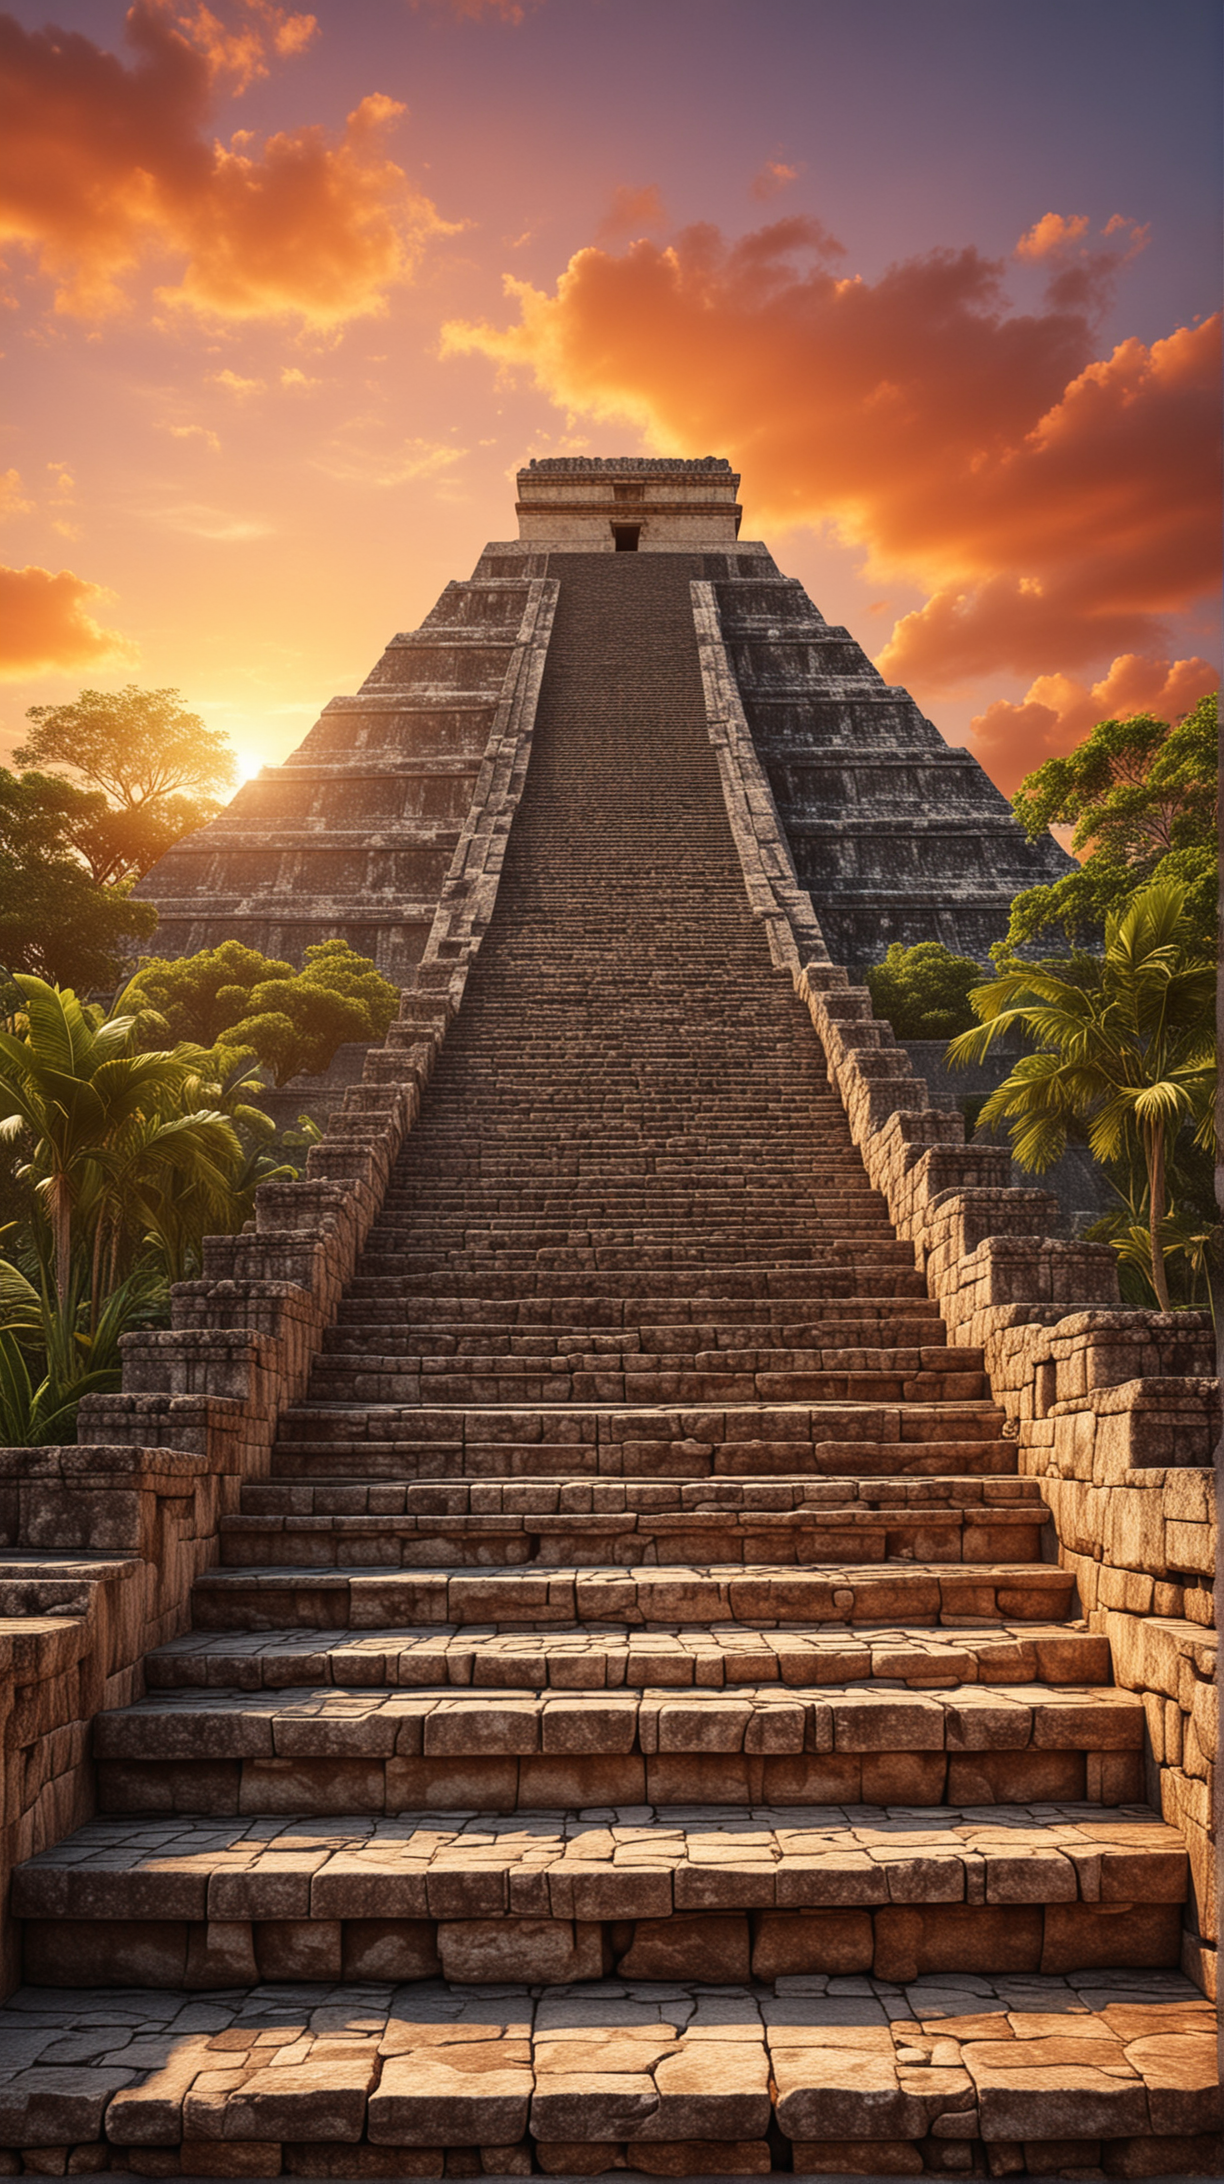 Hyper Realistic Maya Pyramid at Vibrant Sunset